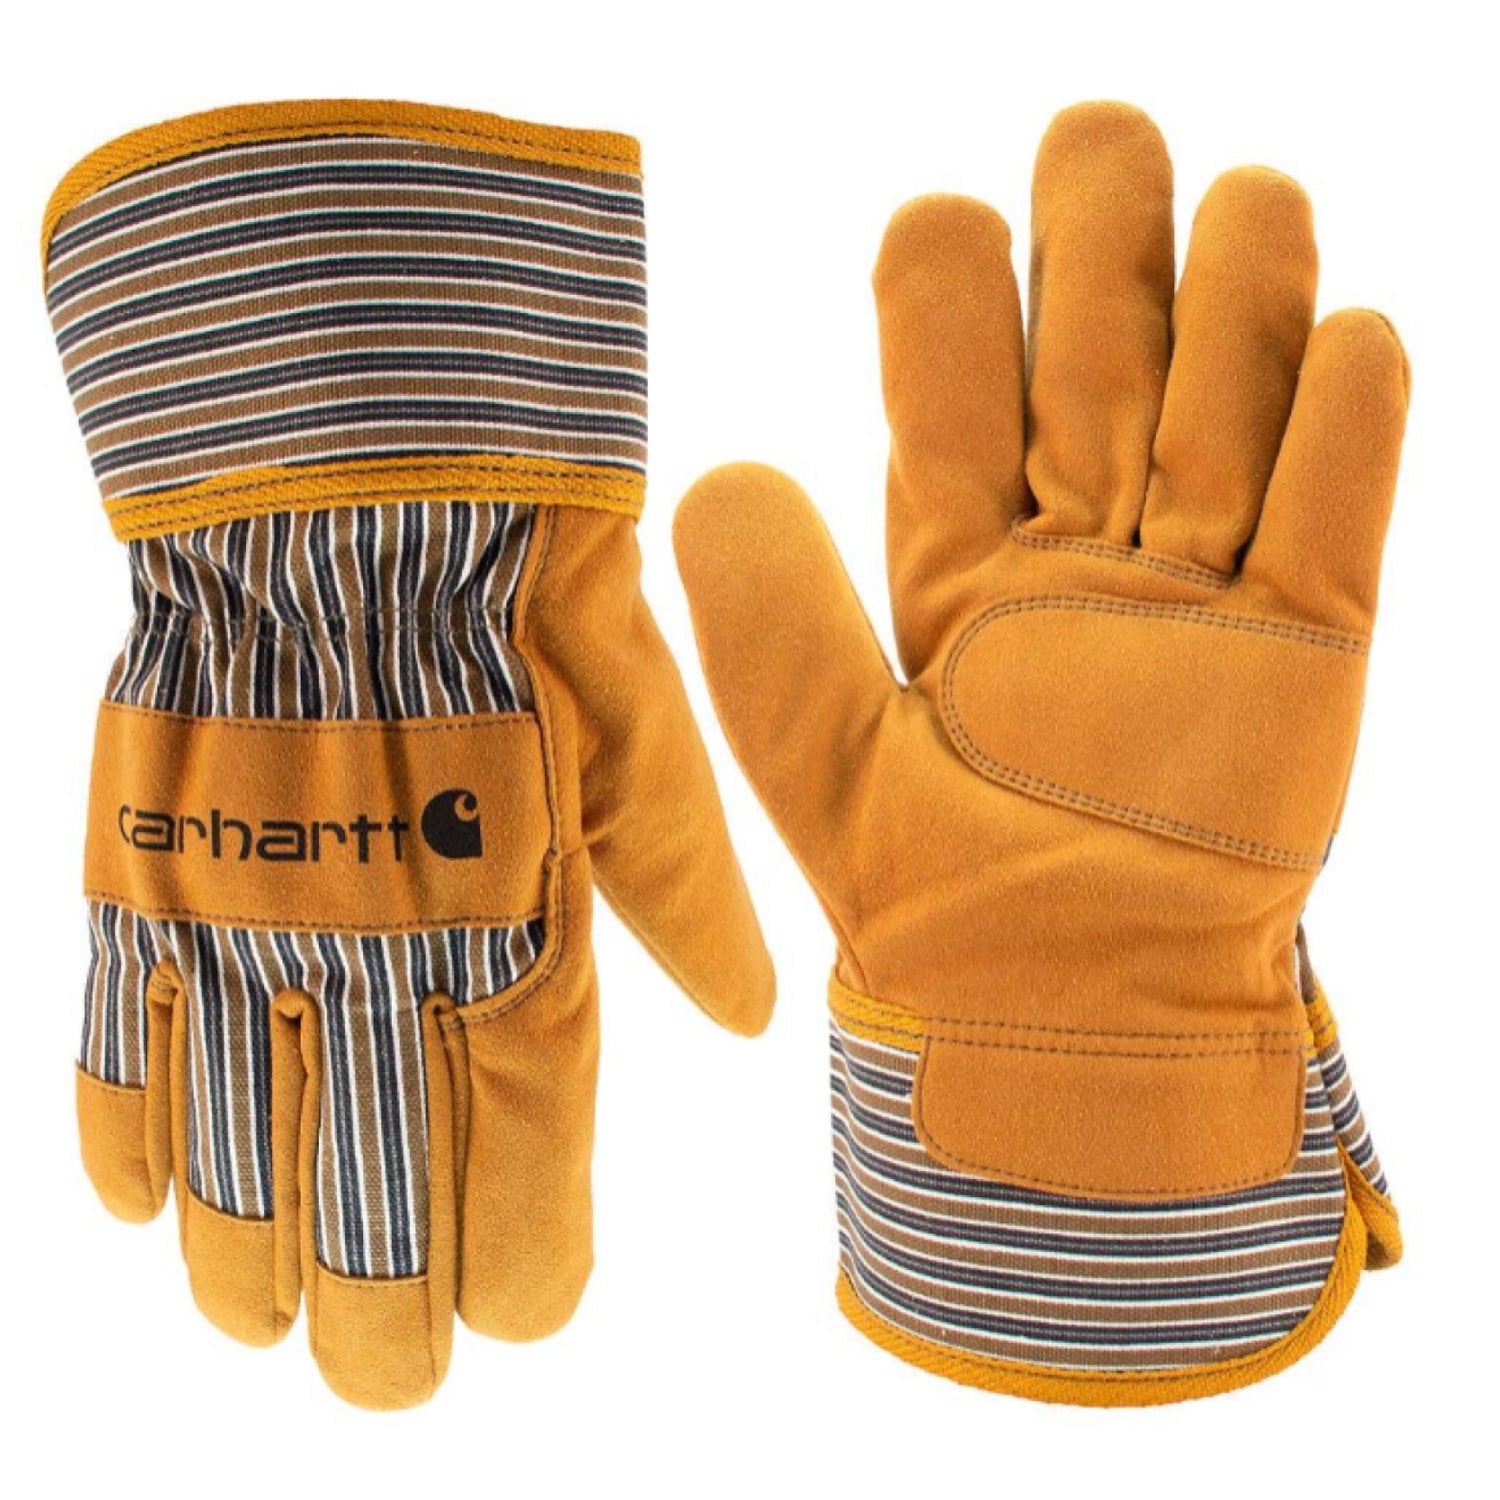 Carhartt Suede Safety Cuff Work Glove - Work World - Workwear, Work Boots, Safety Gear